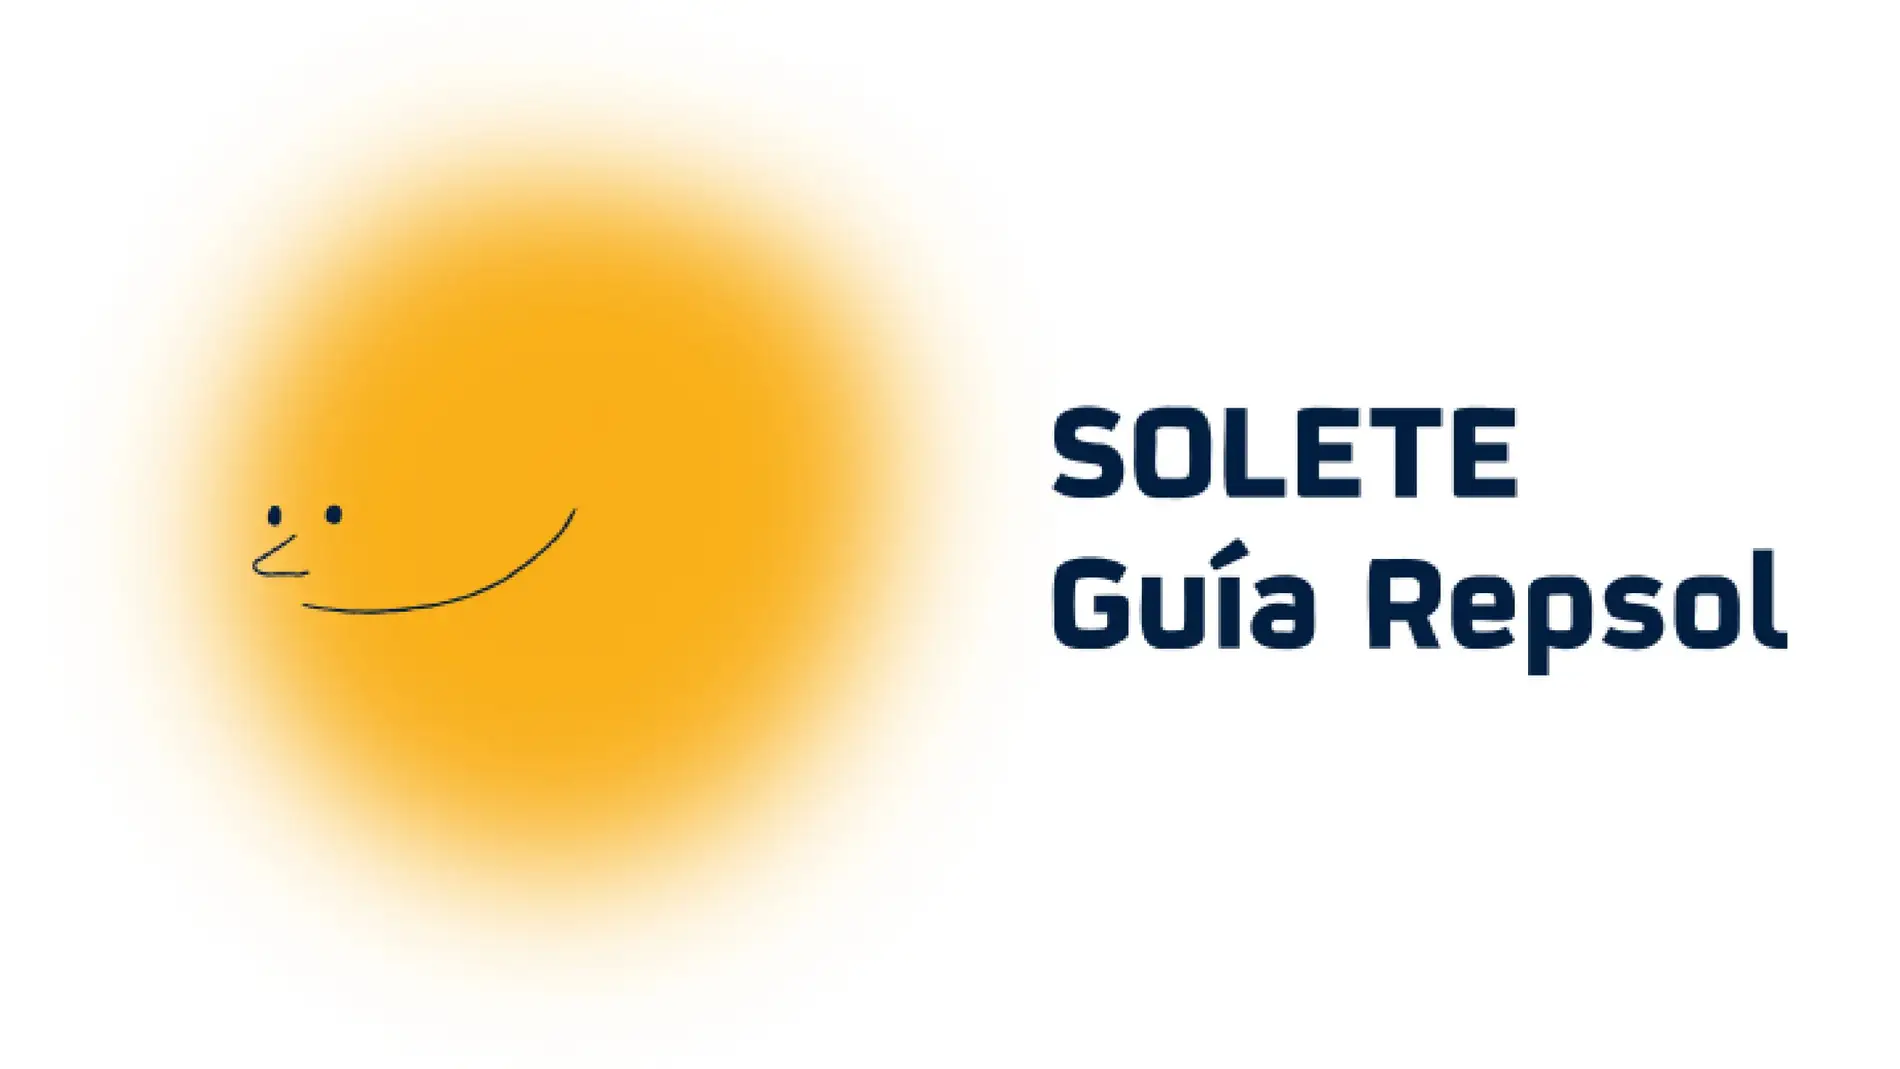 La Guía Repsol otorga 8 nuevos "Soletes" en Extremadura